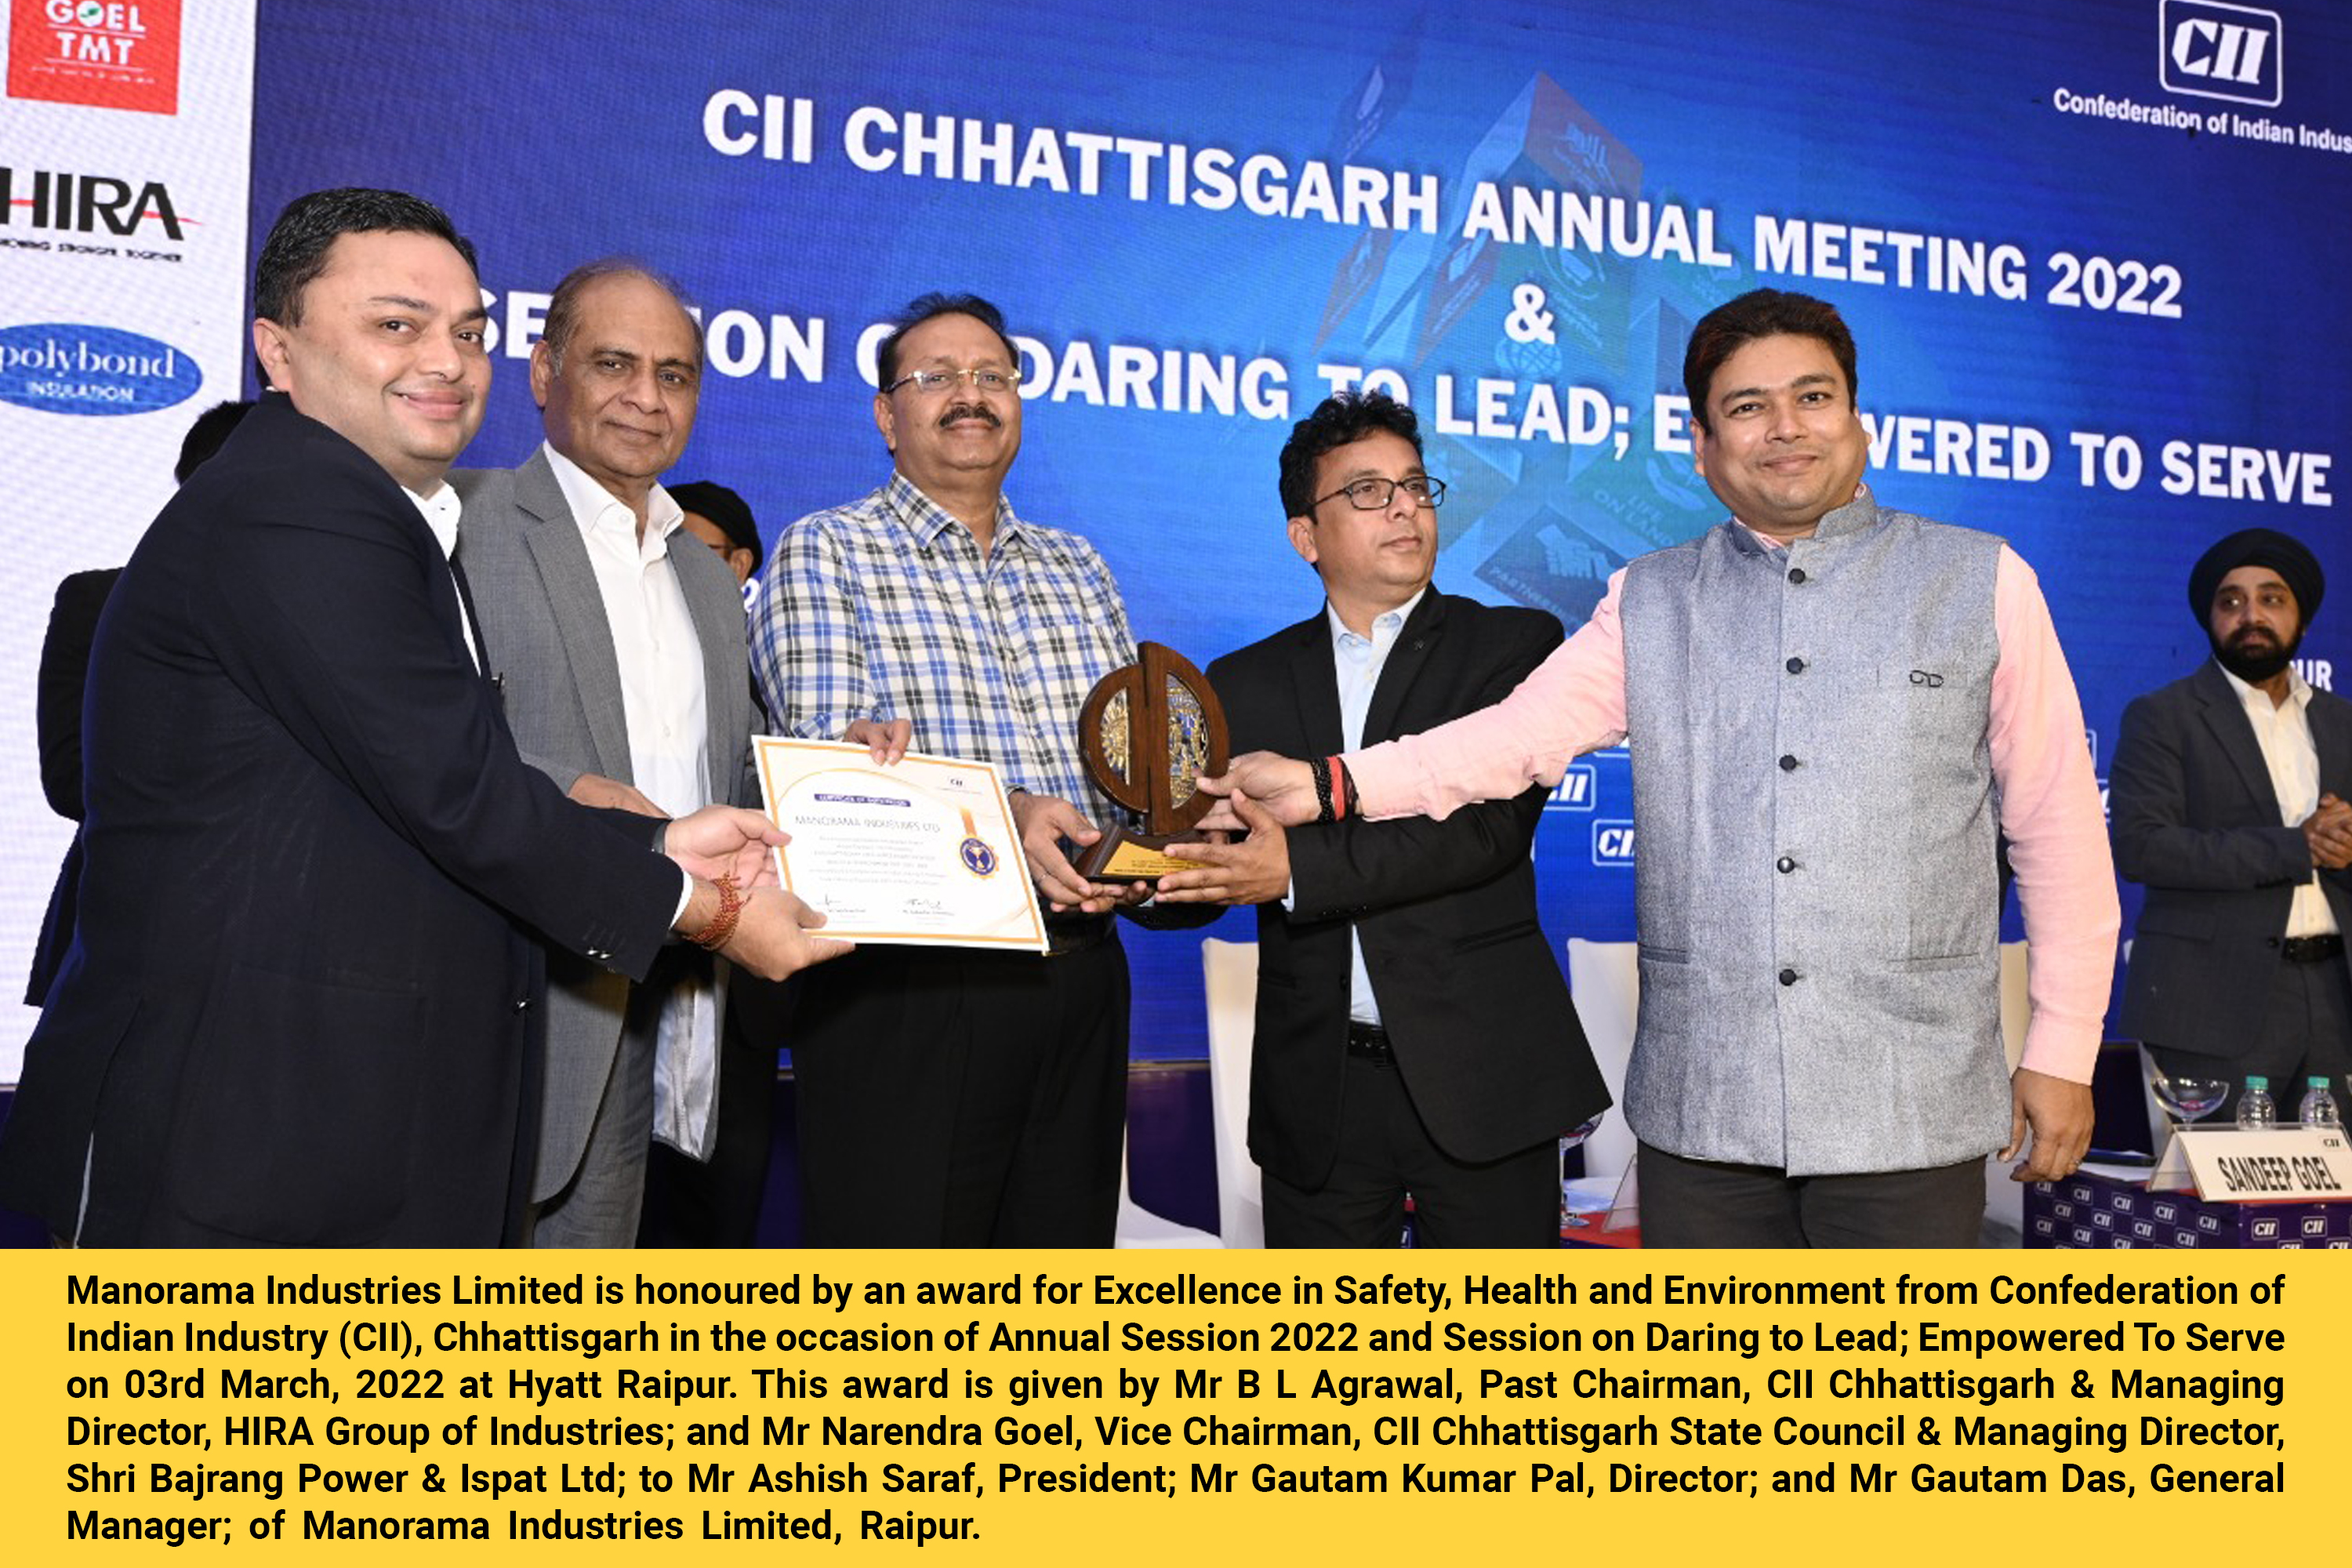 CII Award